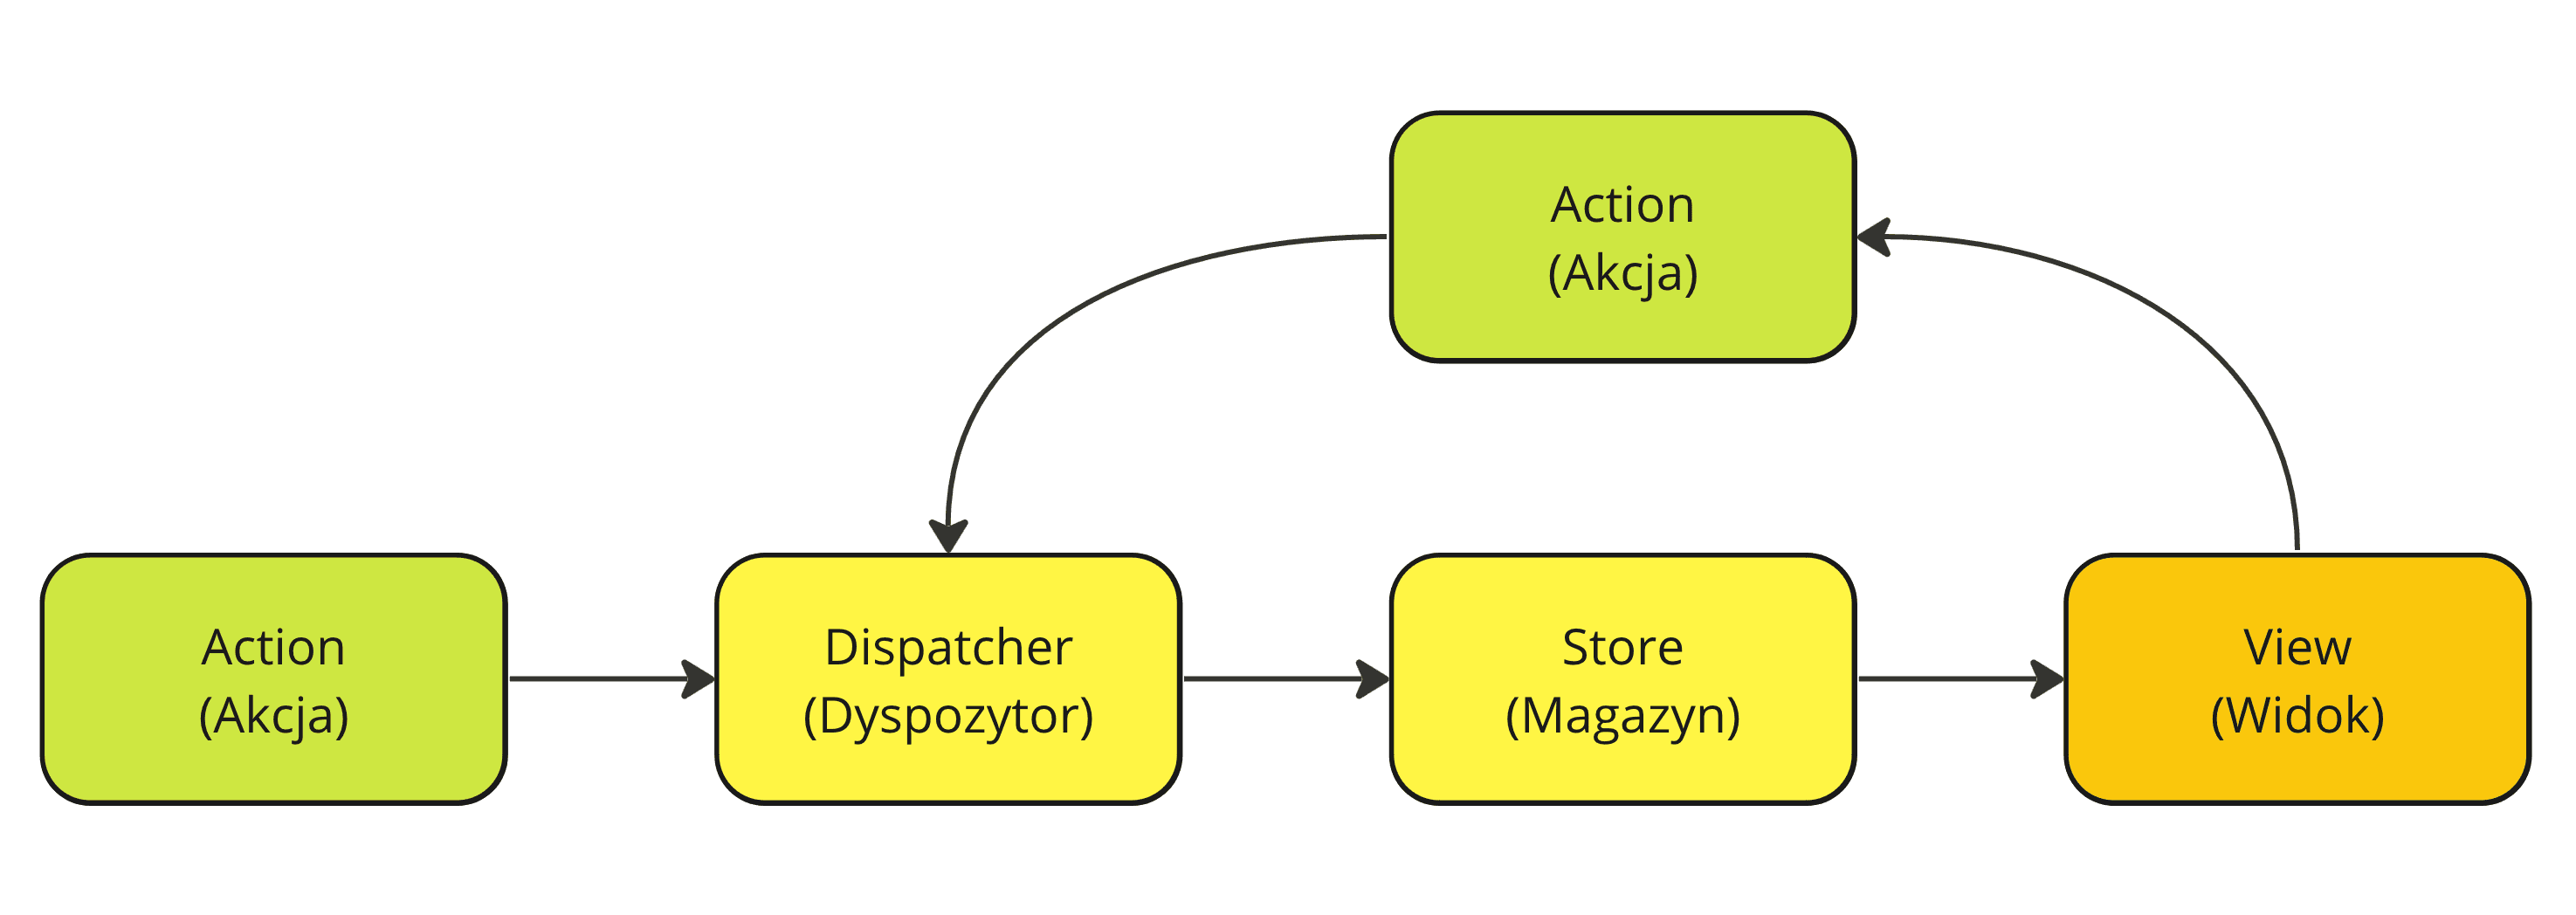 Diagram z następującymi połączeniami. Węzeł Action jest podłączony do węzła Dispatcher. Węzeł Dispatcher jest podłączony do węzła Store. Węzeł Store jest podłączony do węzła View. Węzeł View natomiast jest podłączony do innego węzła Action, który też jest podłączony do węzła Dispatcher.